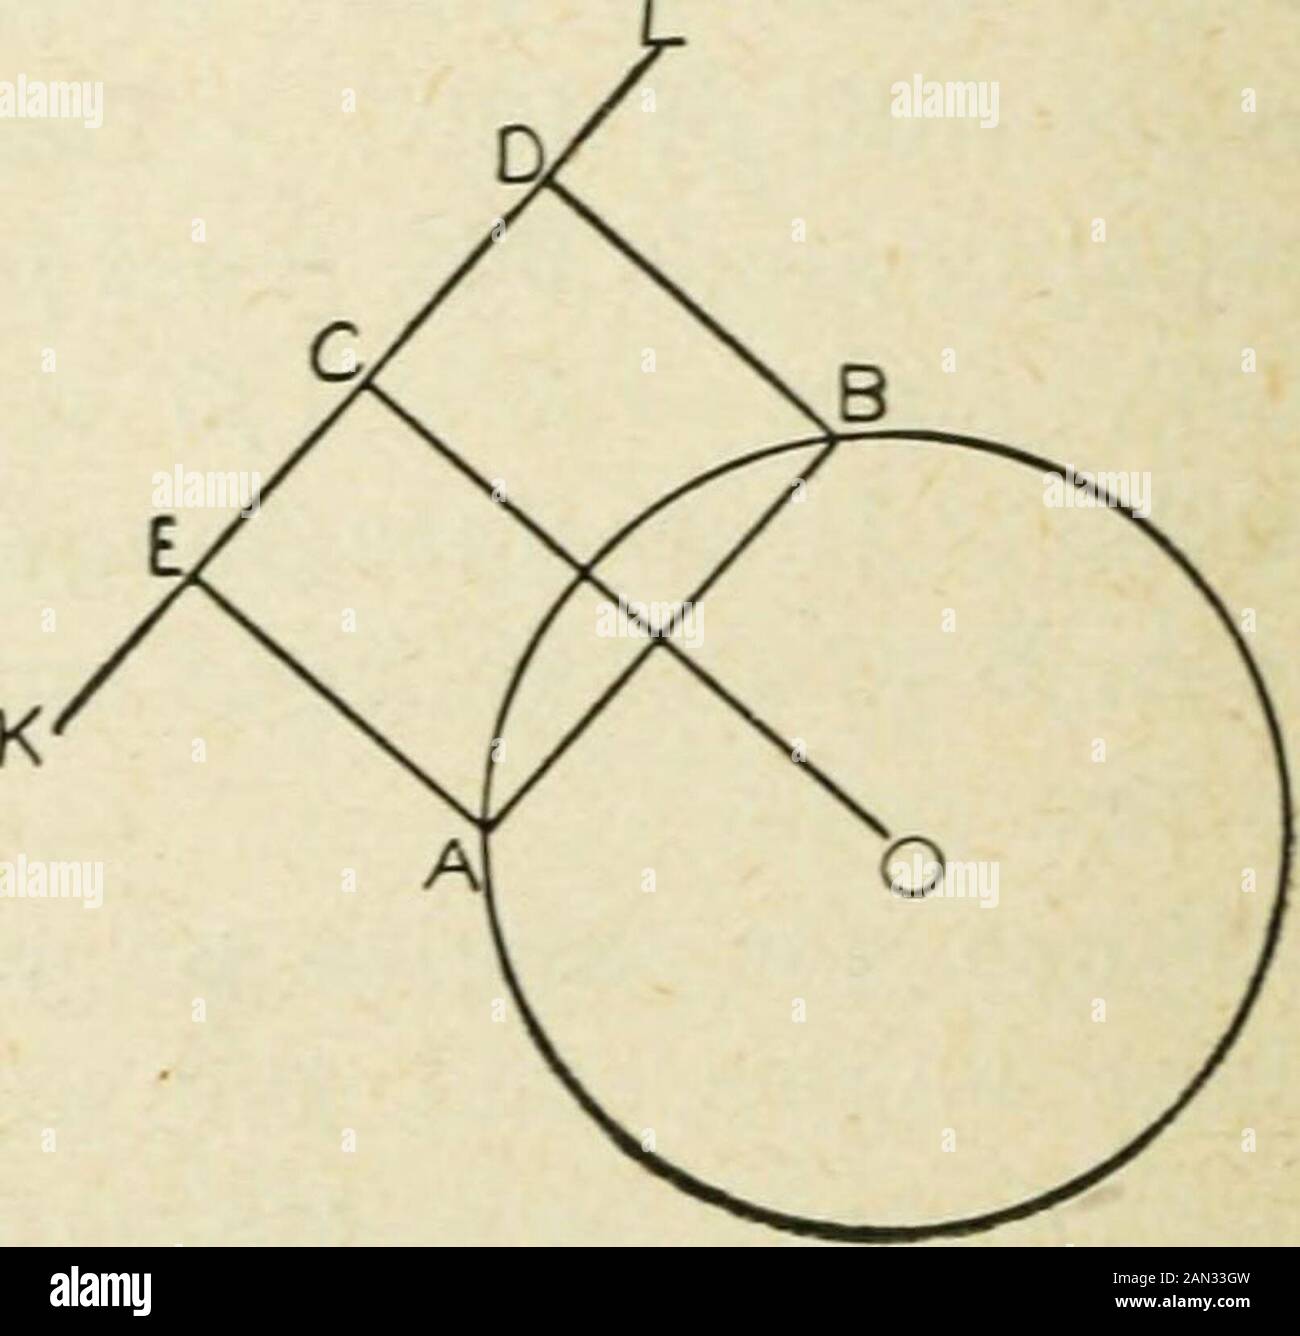 Géométrie du plan élémentaire : inductive et déductive / par Alfred Baker . EXEKCISES. 103 L'accord AB est égal à ED, et est donc de longueur theréquipiée, et il est parallèle à KL. Nous pouvons dessiner l'EA seule perpendiculaire à KL, puis dessiner l'AB parallèle à KL, n'utilisant donc pas le pointD ou la ligne DB. Bien sûr, l'accord ne peut jamais être supérieur au diamètre du cercle dans lequel il doit être placé. Dans un cercle dont le rayon est de 55 millimètres, les accords-levis, avec une extrémité au même point, de longueurs de 20,25, 30, 35, 40, 45, 50, 55 et 110 millimètres. Dans un cercle de rayon de 1 pouce, placer dix accords de longueur Banque D'Images